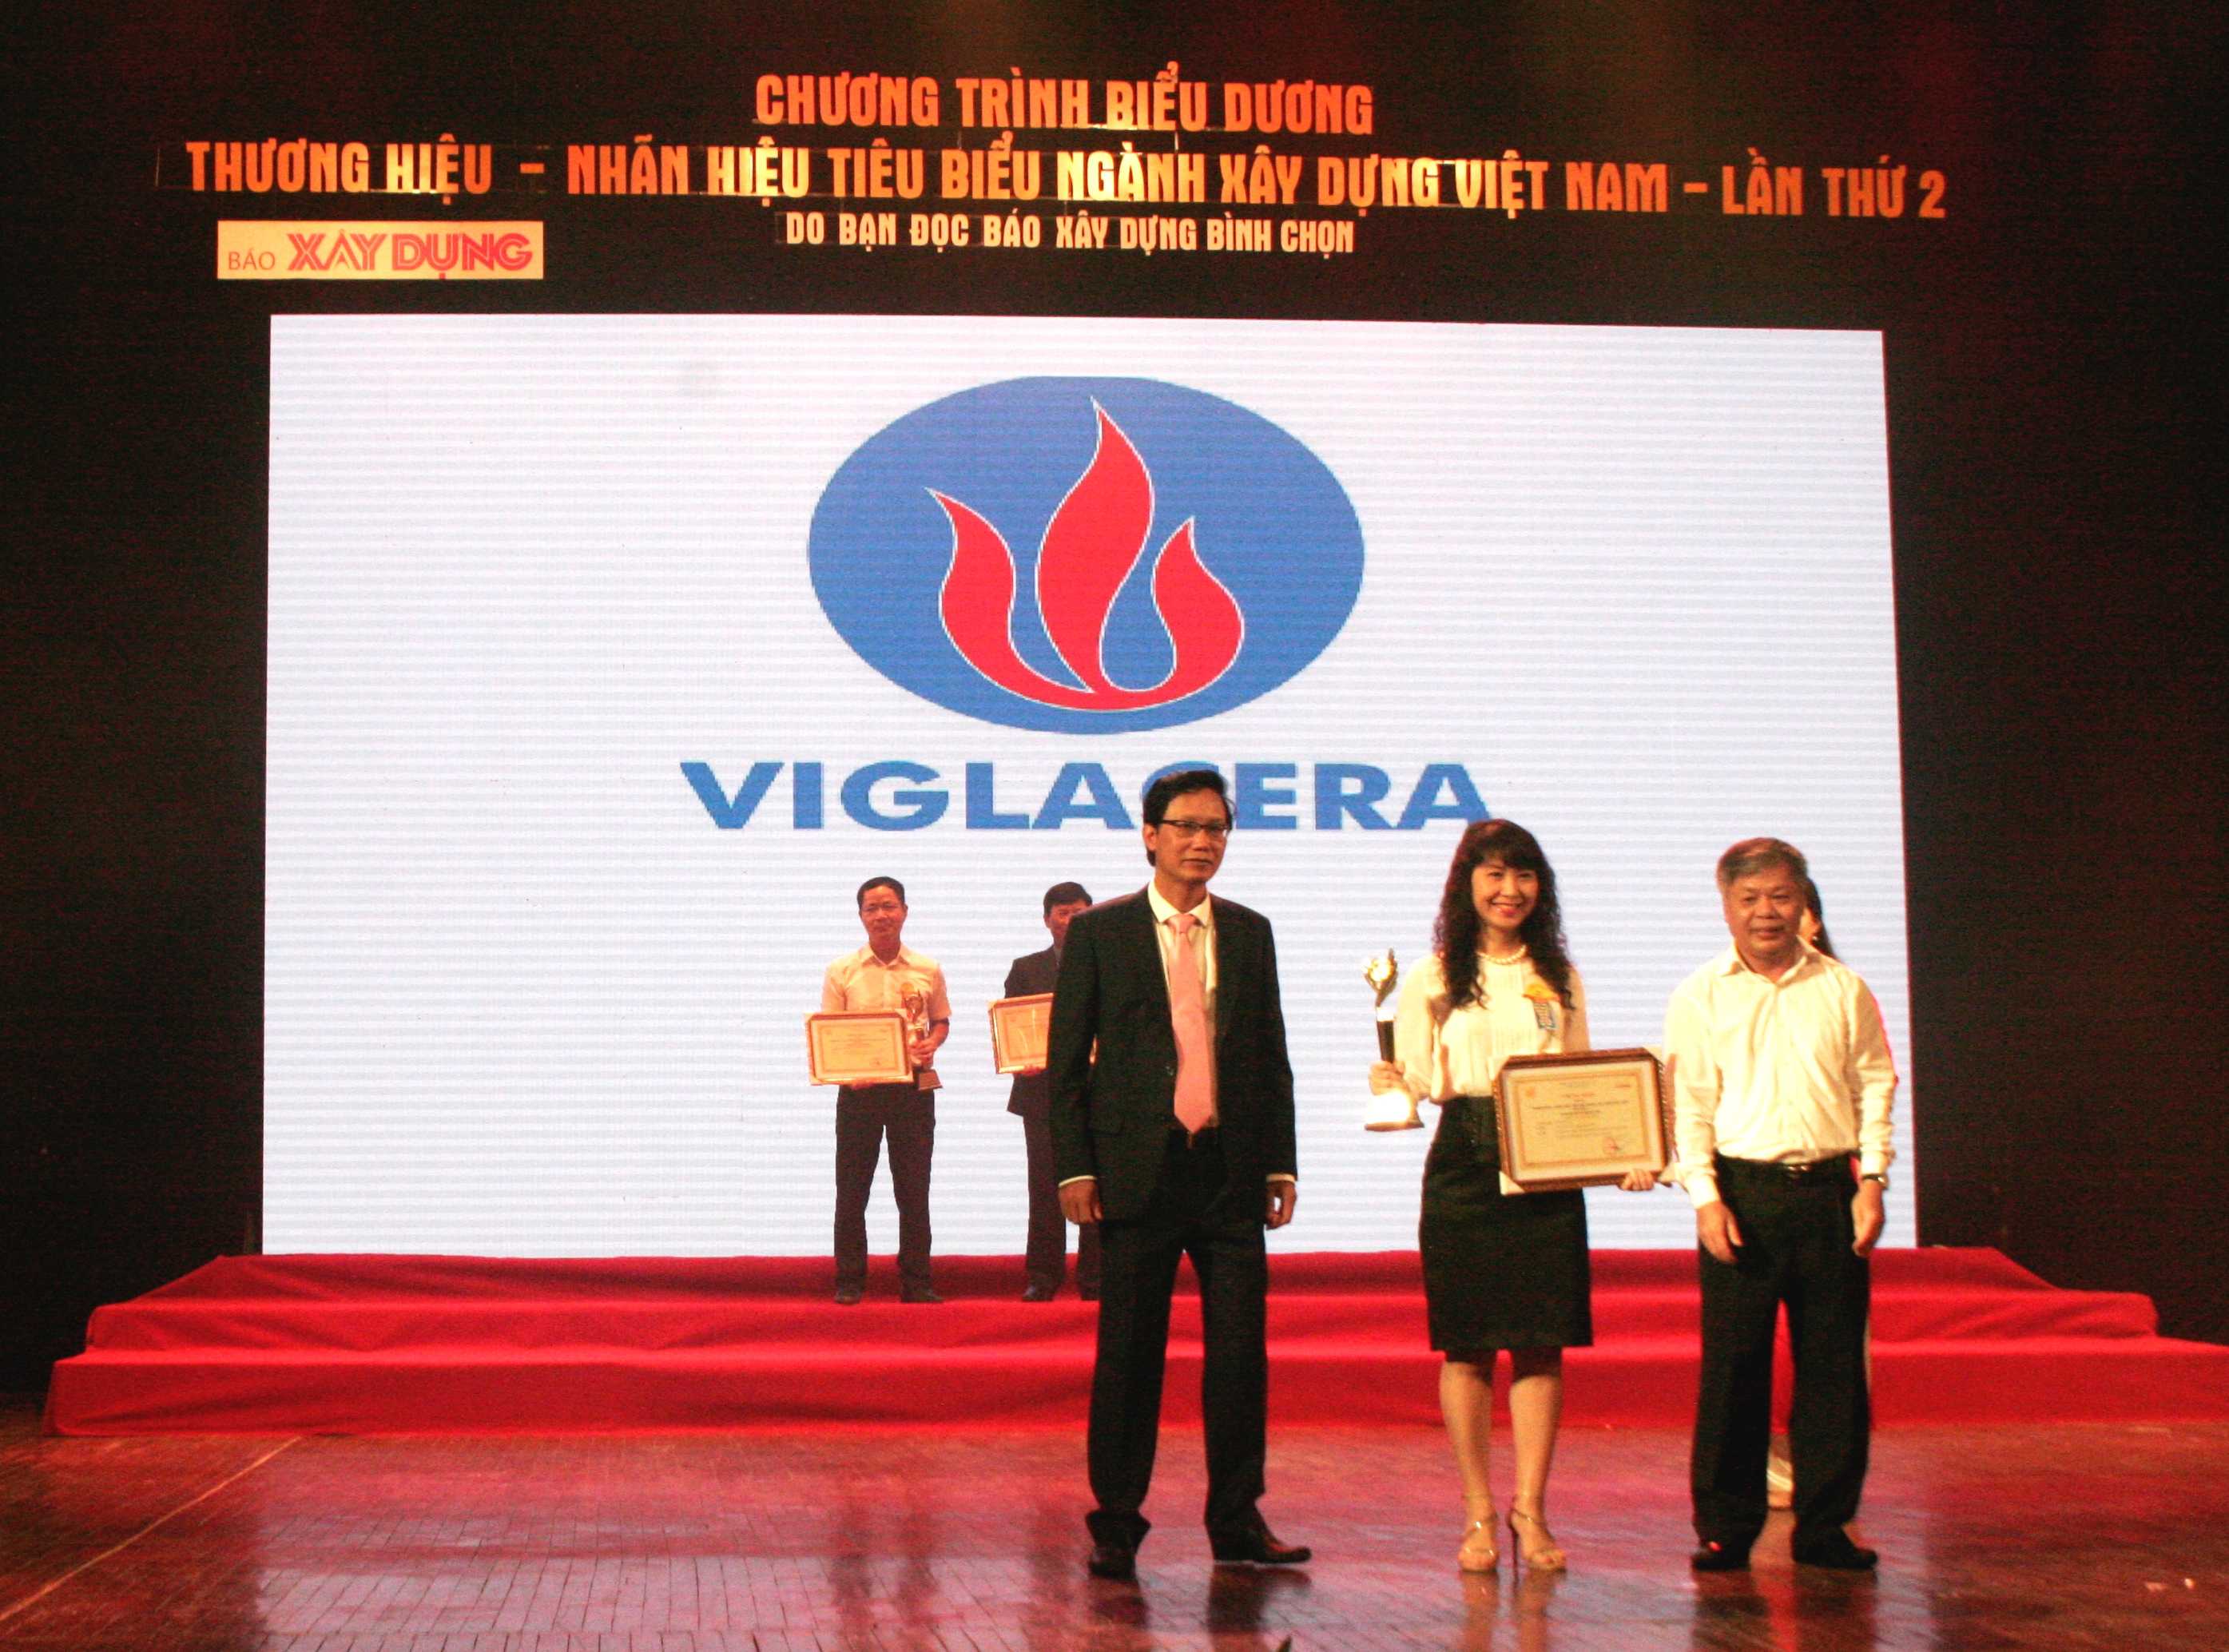 Viglacera được vinh danh - Nhãn hiệu tiêu biểu ngành Xây dựng năm 2017